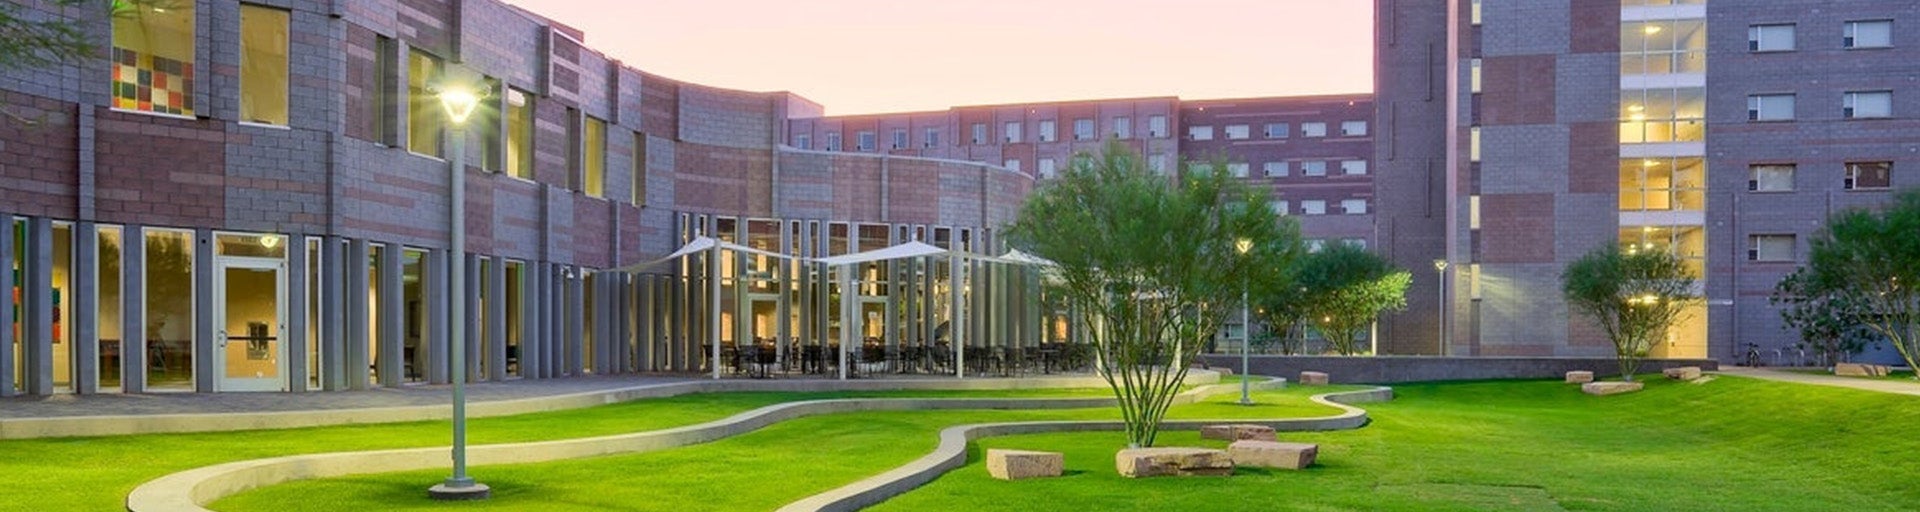 Barrett, The Honors College Arizona State University